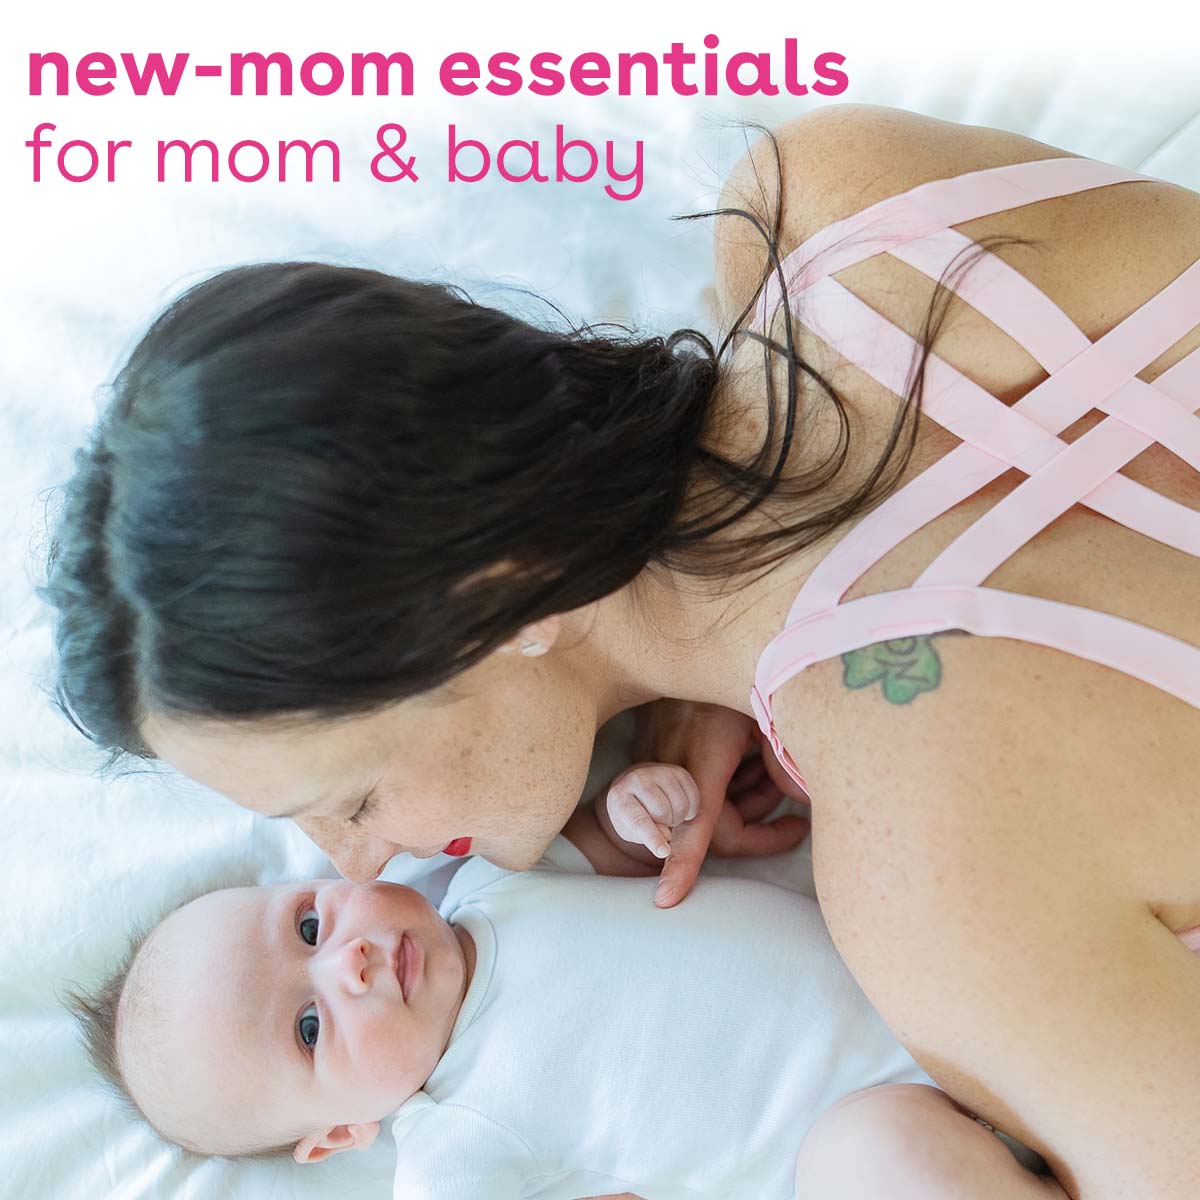 Nursing Bras & Breastfeeding Pads – Bamboobies